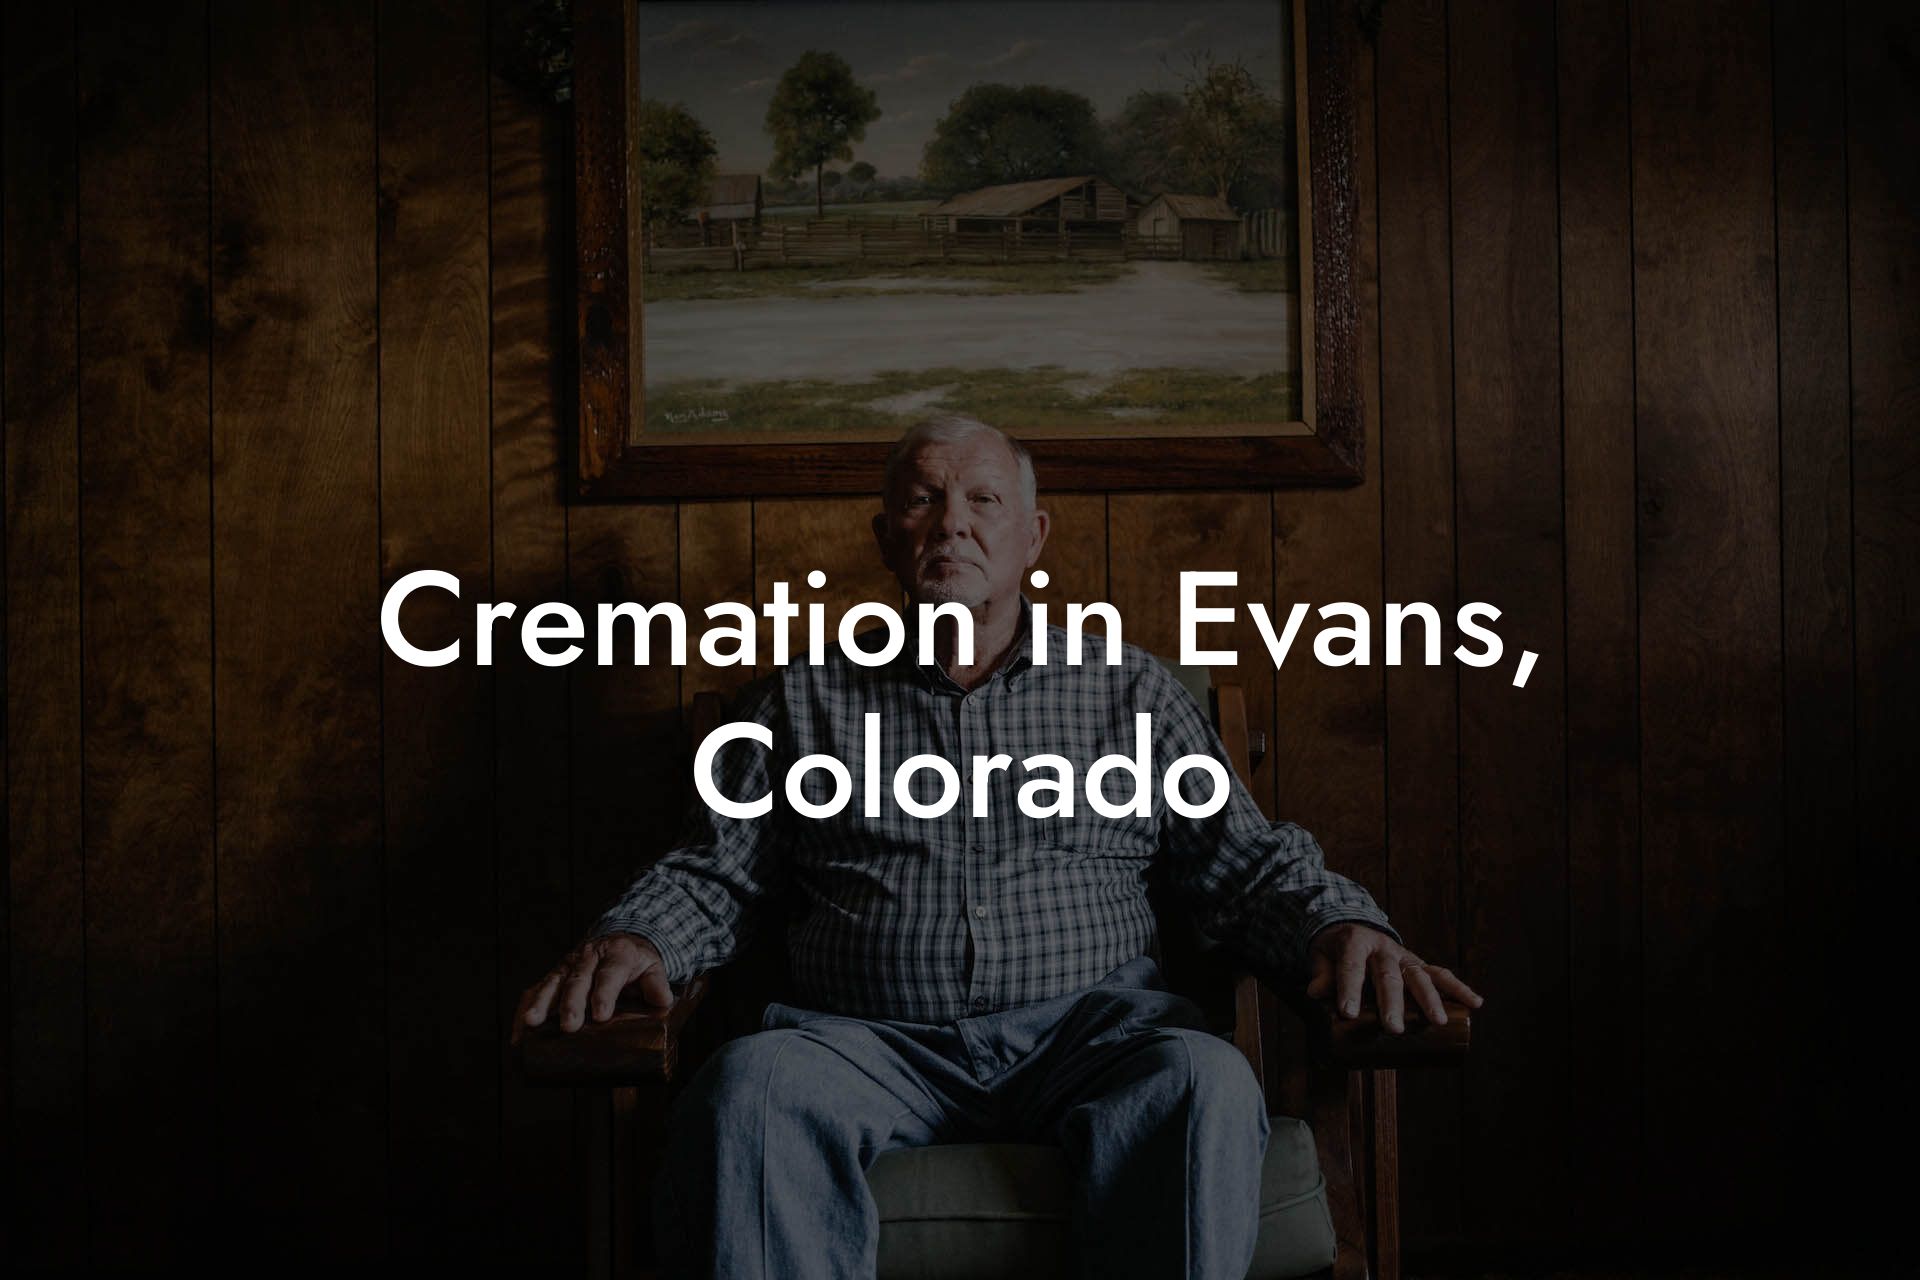 Cremation in Evans, Colorado